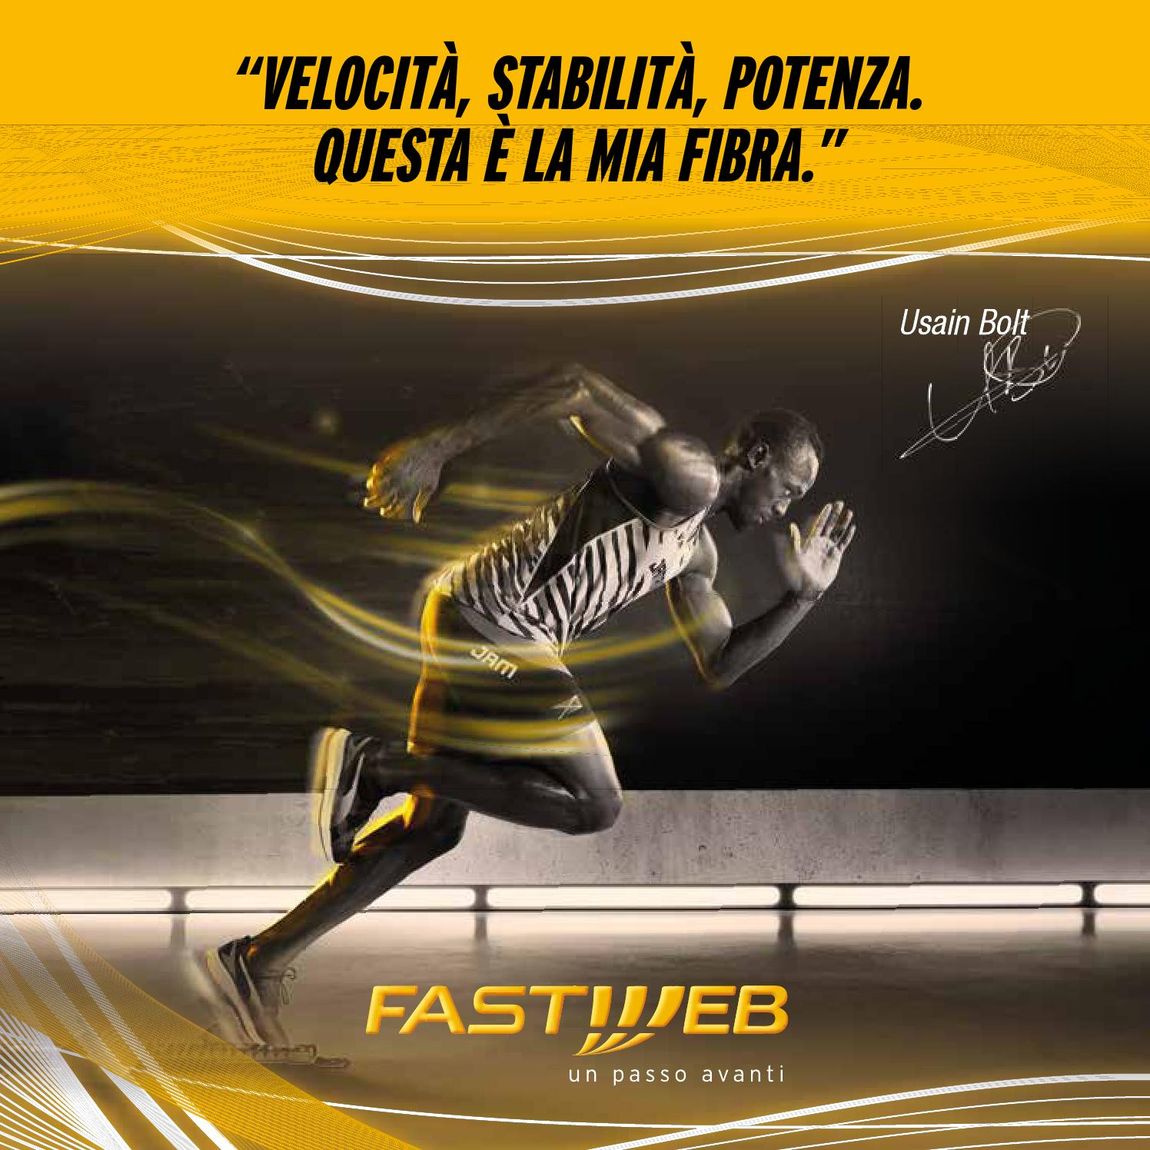 pubblicità fibra fastweb con Usain Bolt